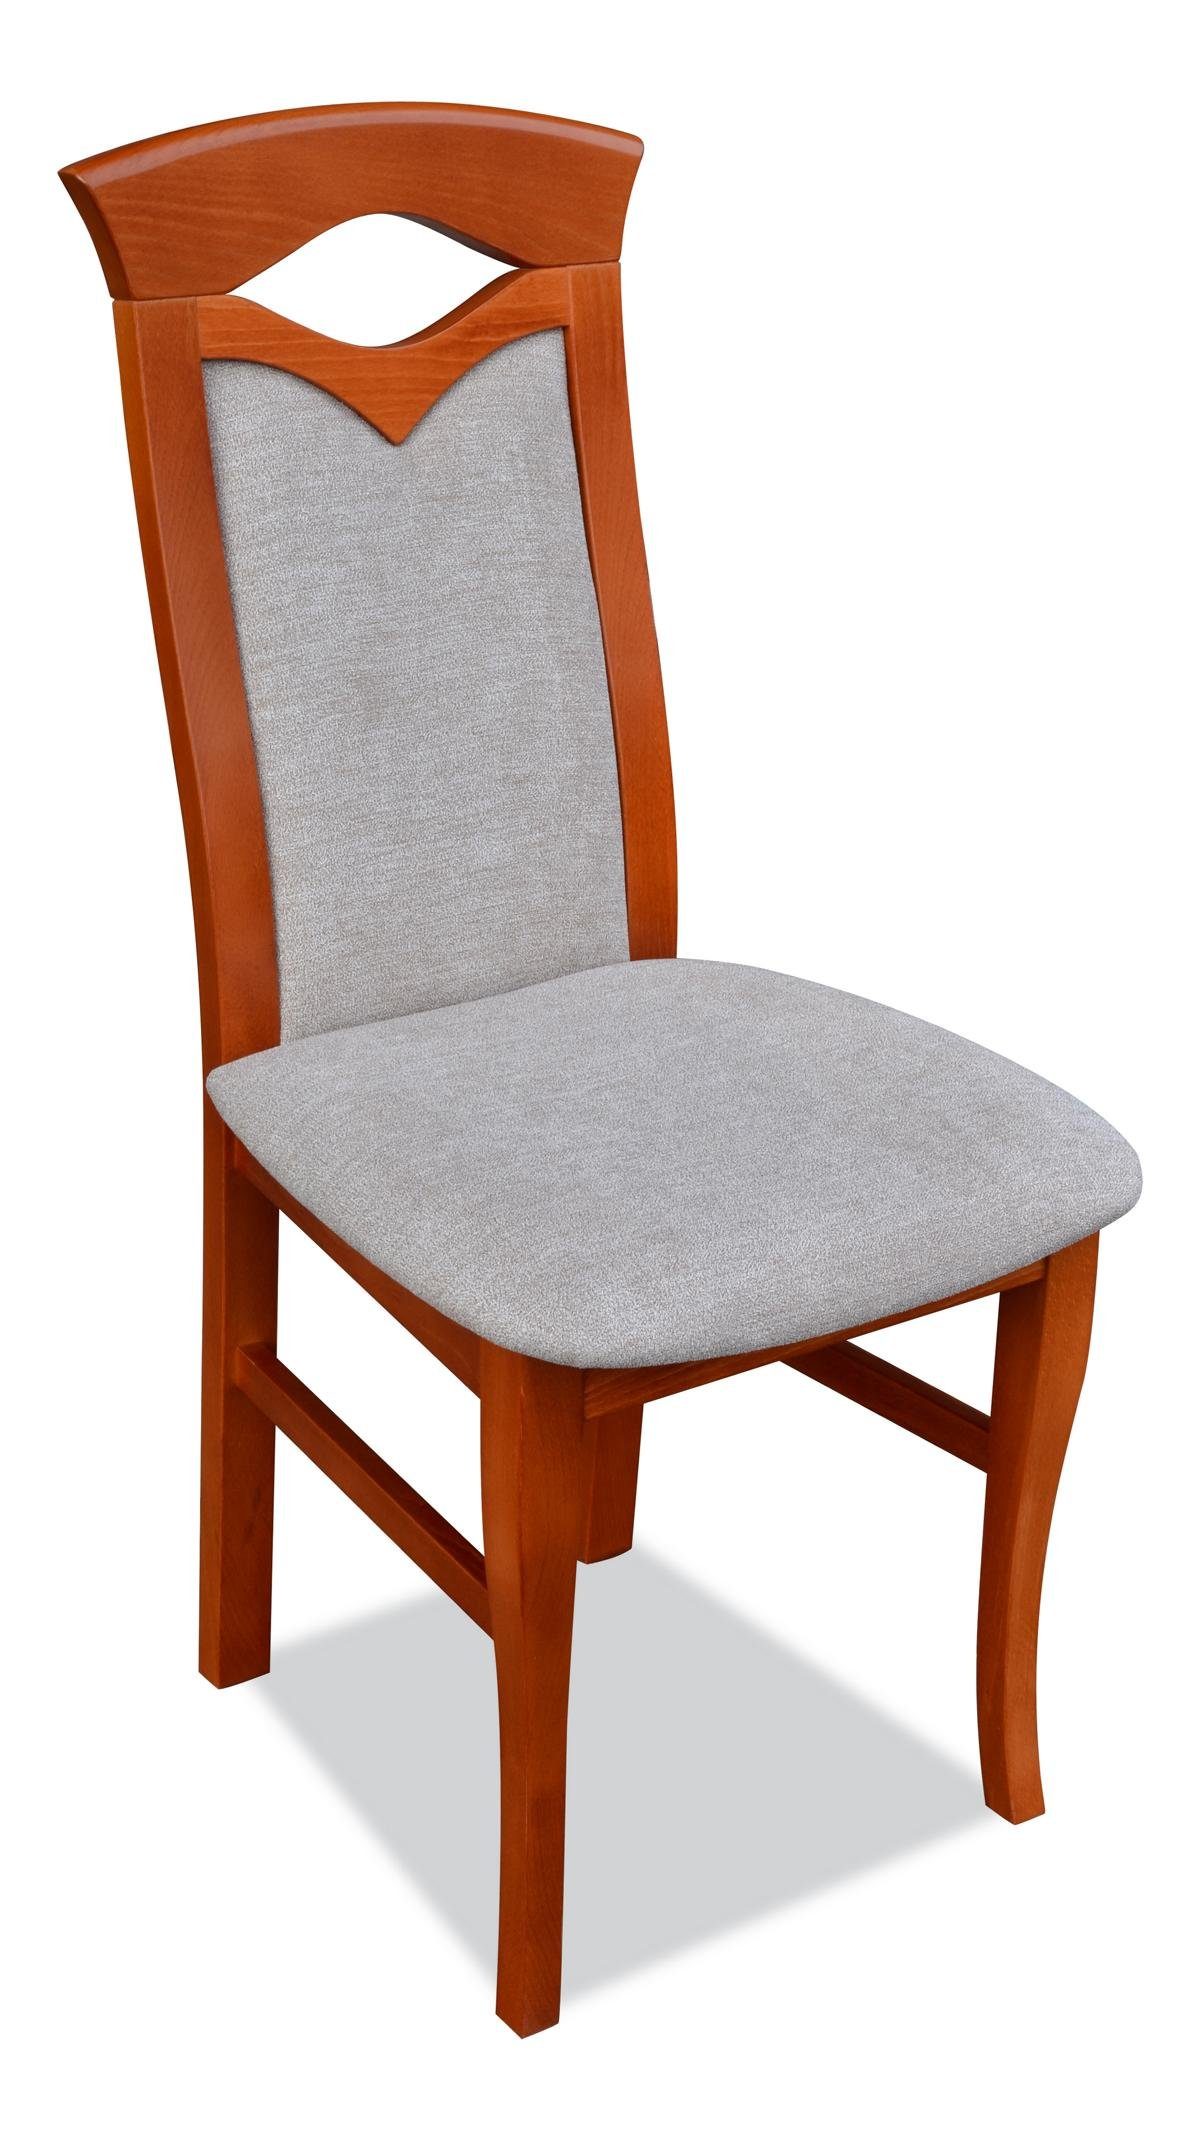 JVmoebel Stuhl, Gepolsterte Stuhl Sessel Königlicher Klassiker Stühle Polster Lehn Sitz Holz Neu